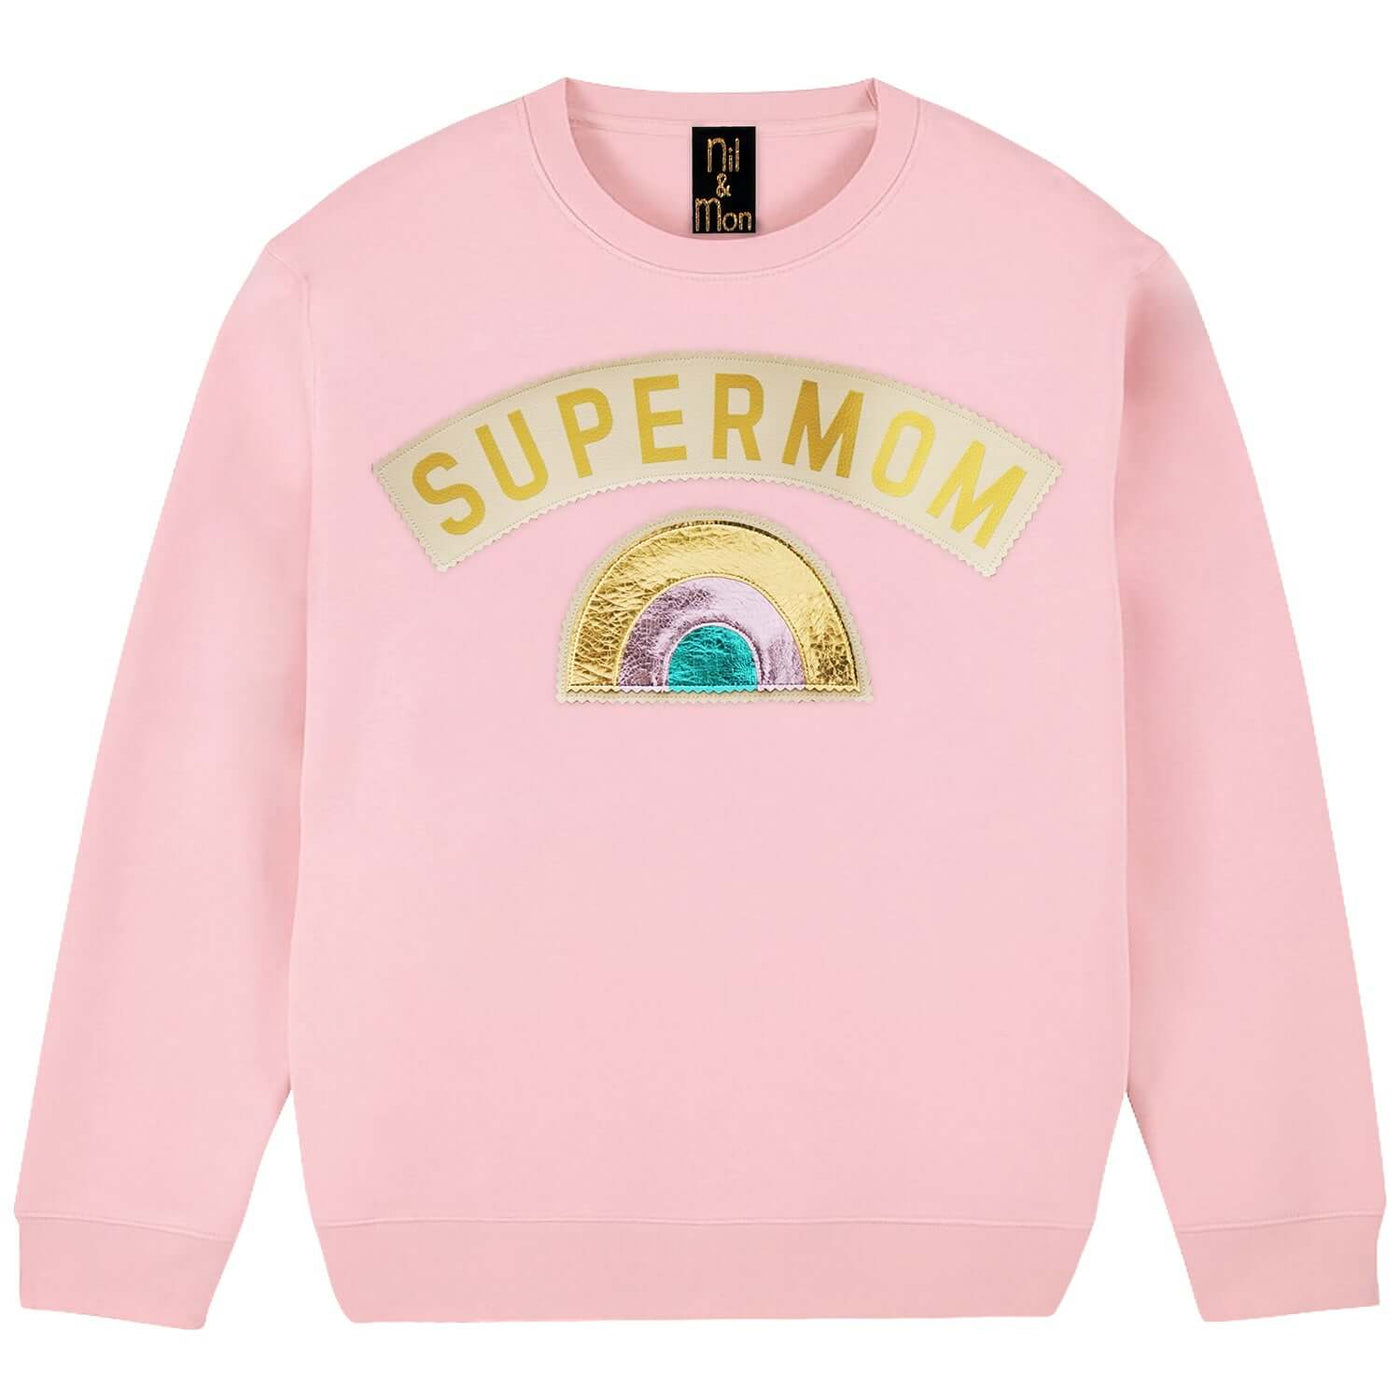 Sweatshirt "Supermom" - light pink